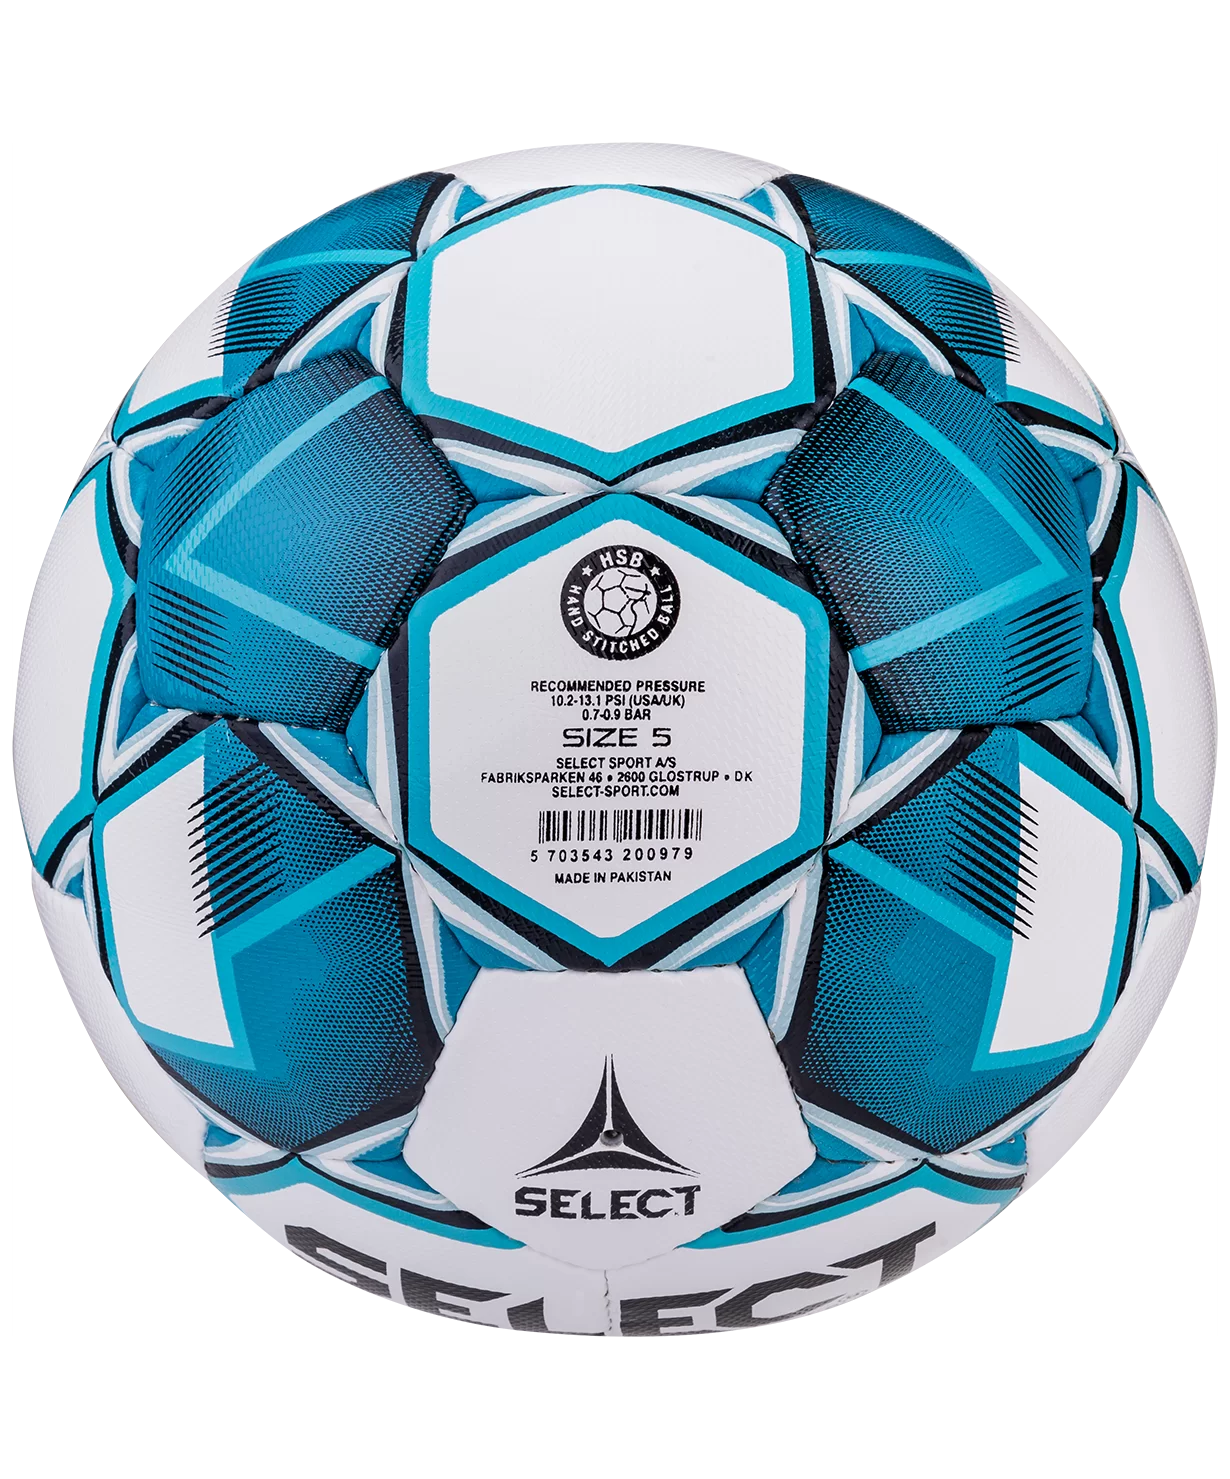 Реальное фото Мяч футбольный Select Team IMS №5 белый/синий/черный 815419 от магазина СпортСЕ